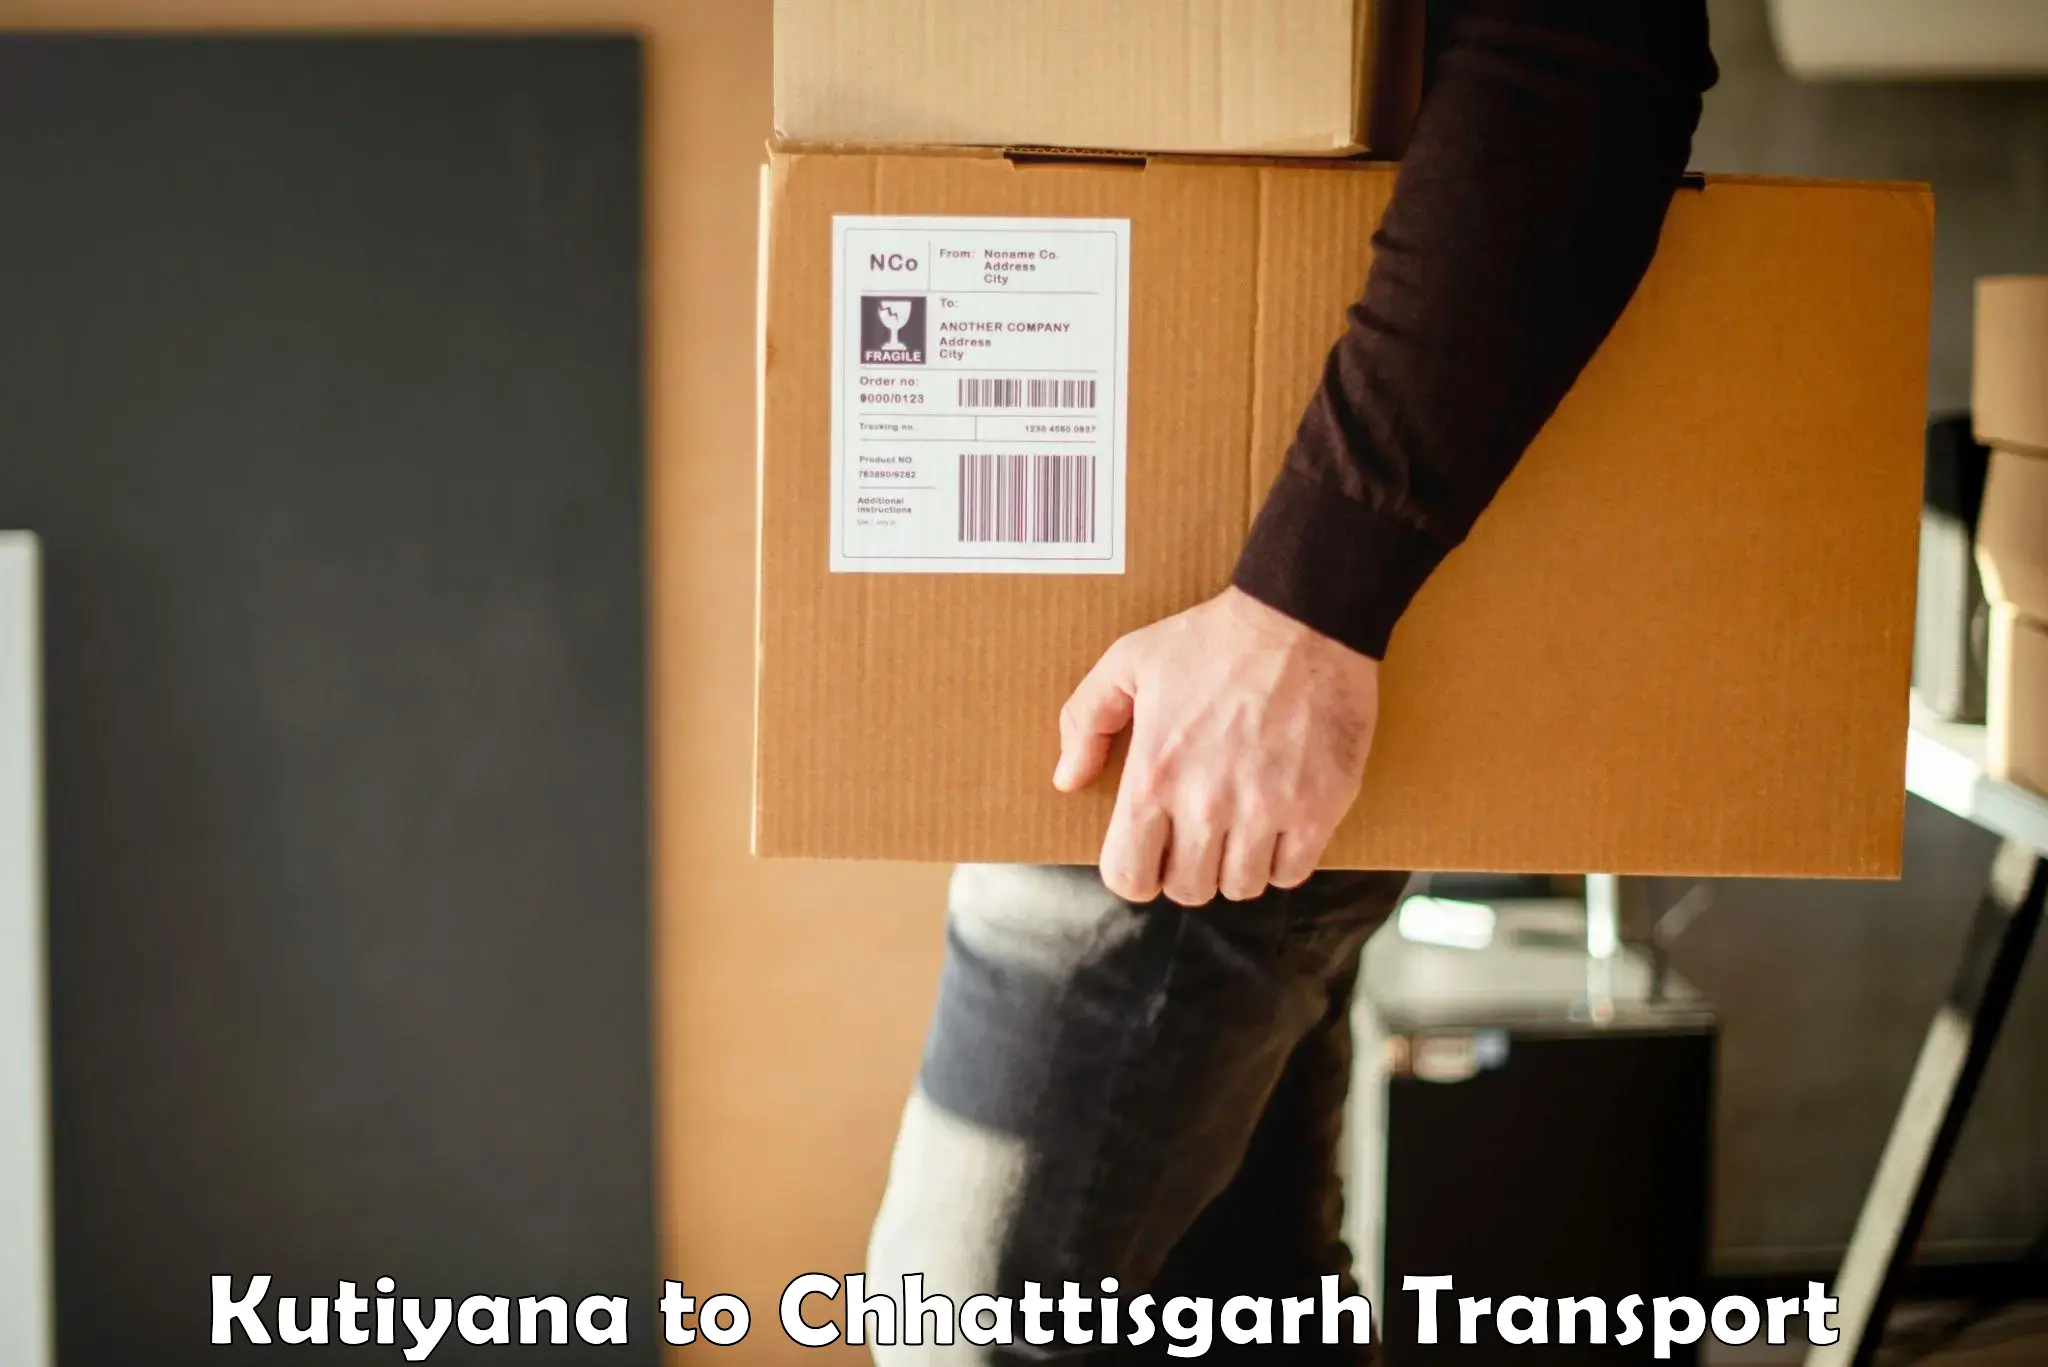 Daily transport service Kutiyana to Chhattisgarh